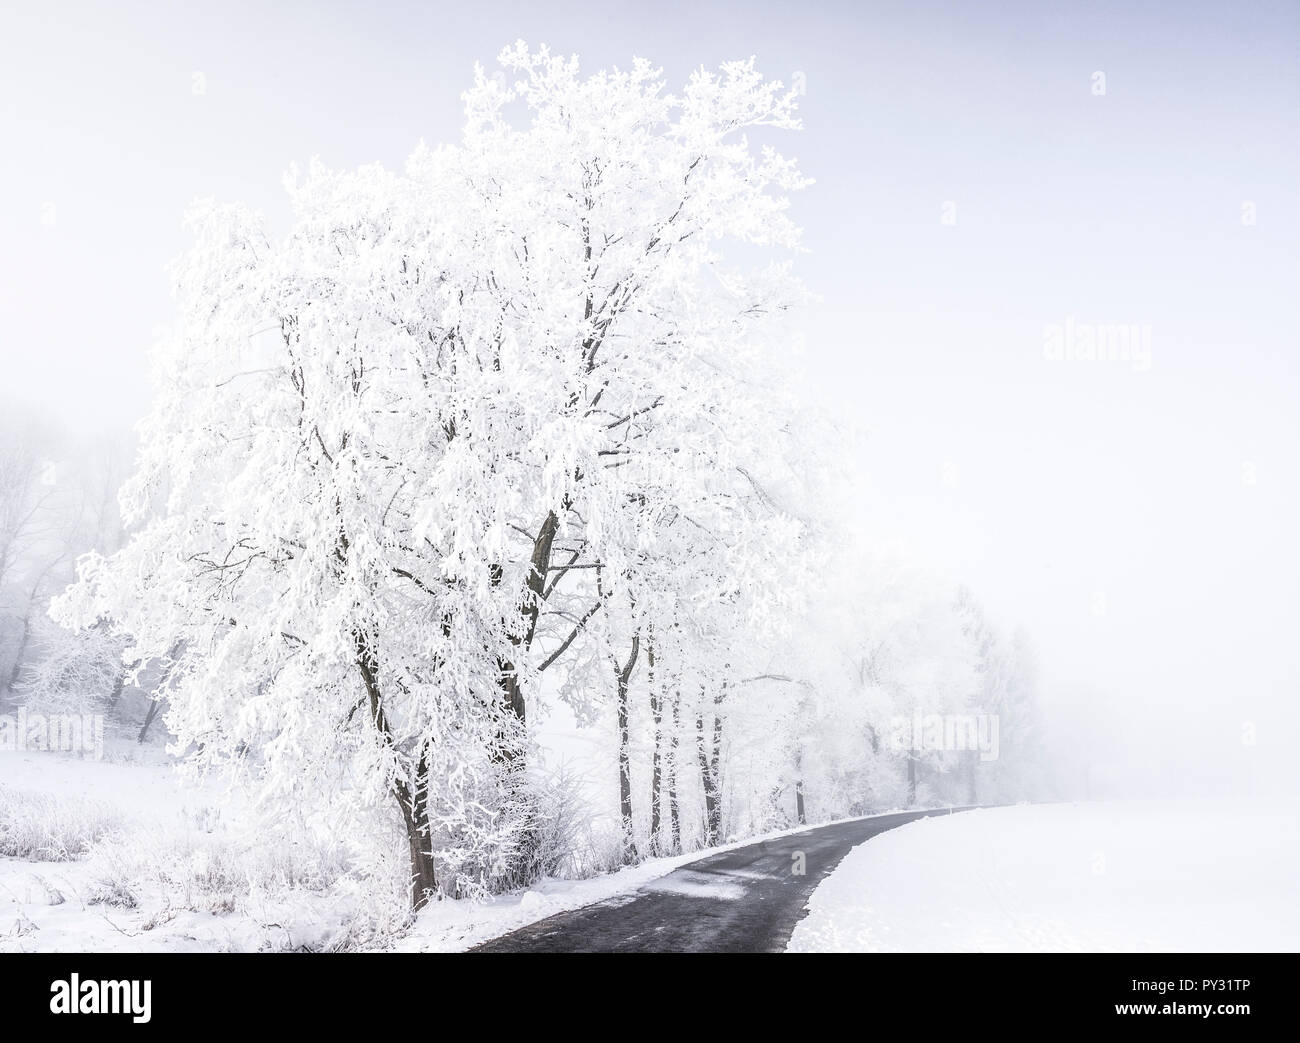 Winterlandschaft mit Schnee, Raureif und Nebel, Bayern, BRD Foto Stock